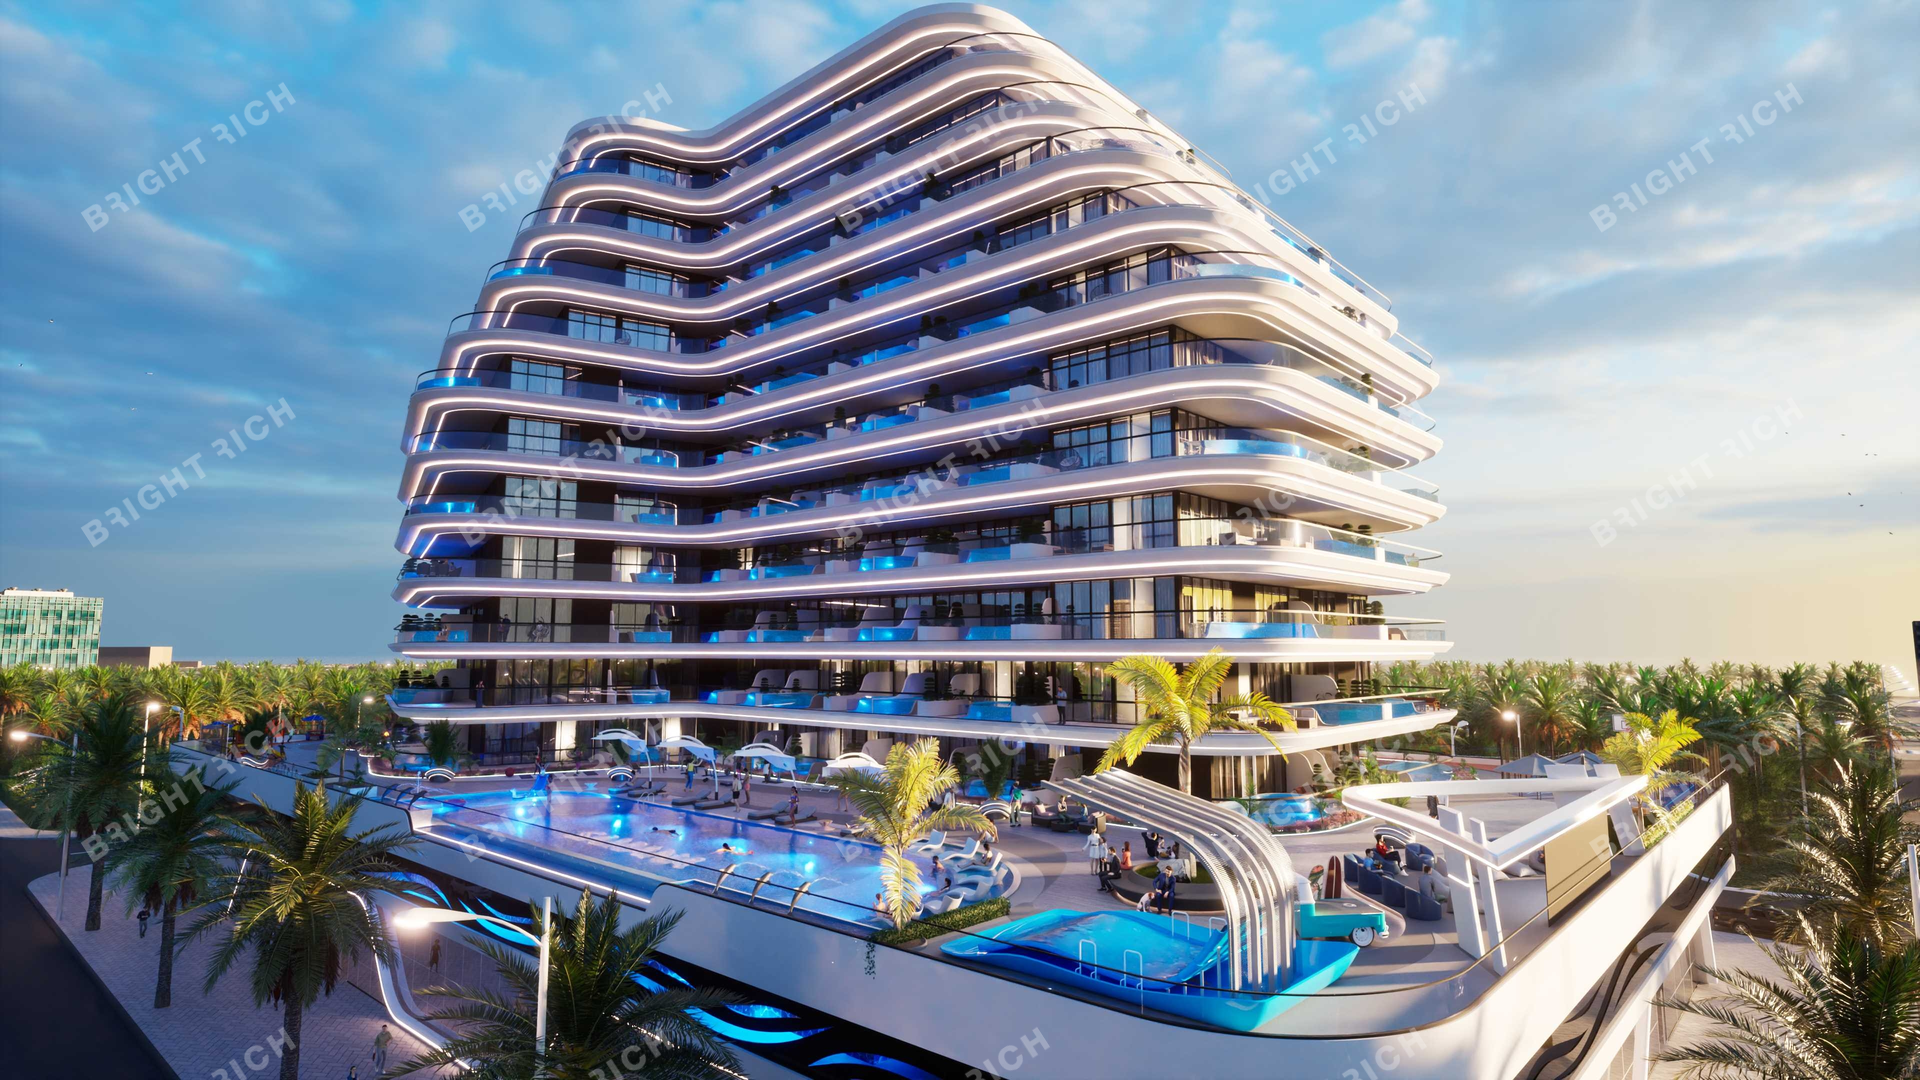 Samana Portofino, apart complex in Dubai - 1